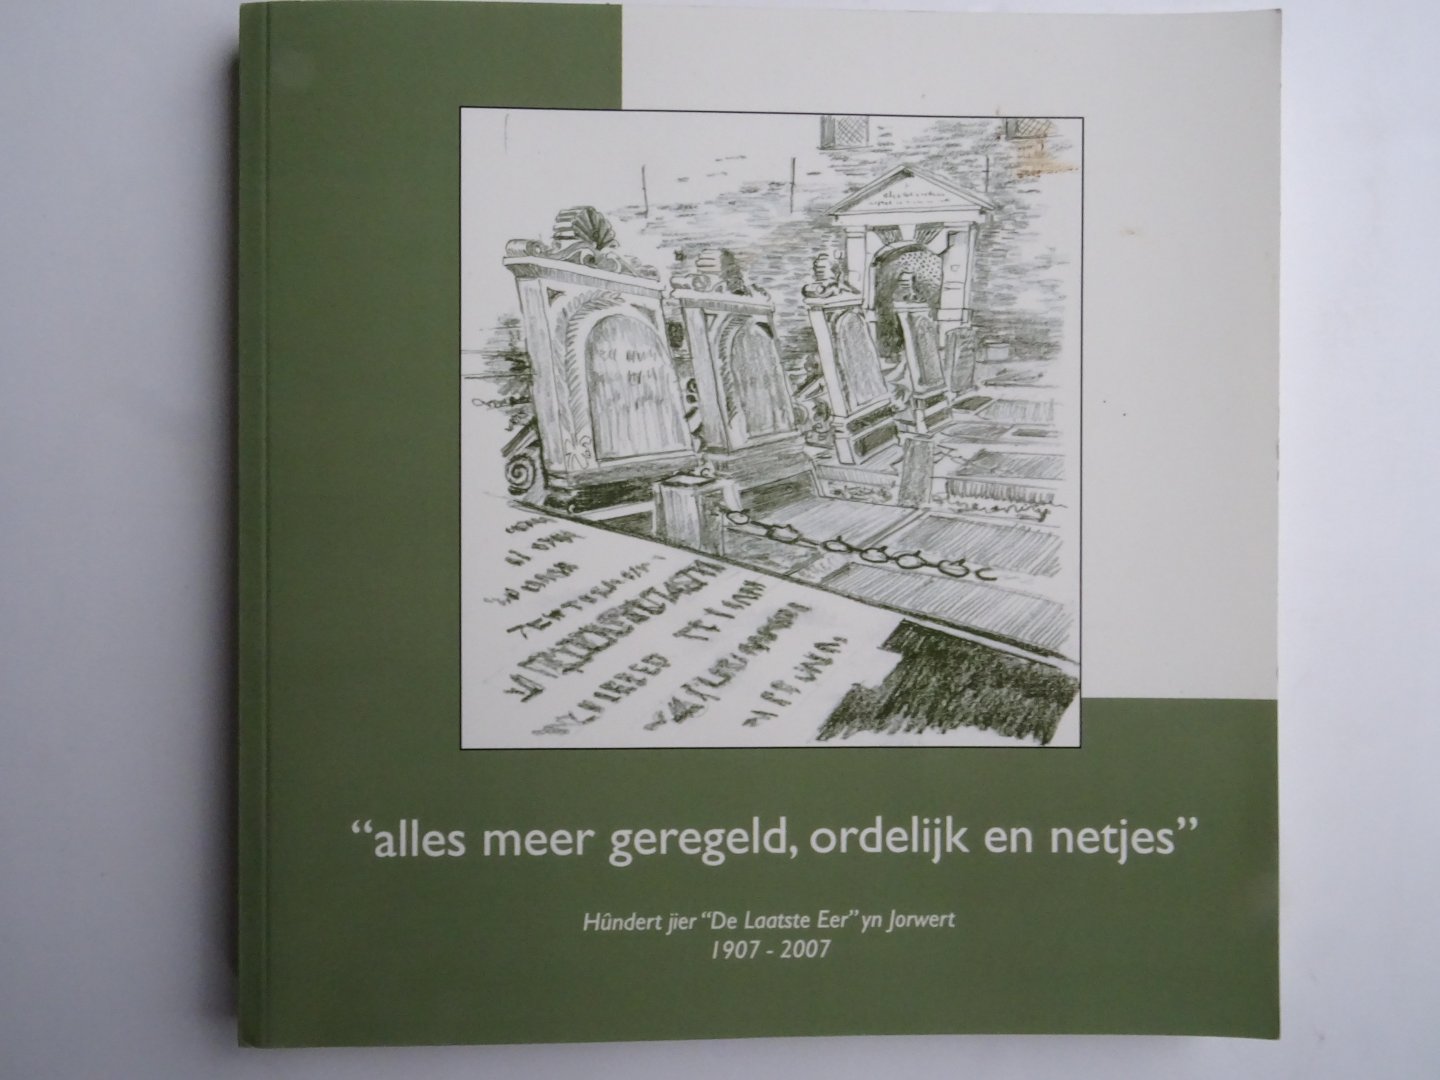 Bildt, Douwe de en Dyj, Siebren. - Alles meer geregeld, ordelijk en netjes. Hundert jier "De laatste Eer" yn Jorwert . 1907-2007.